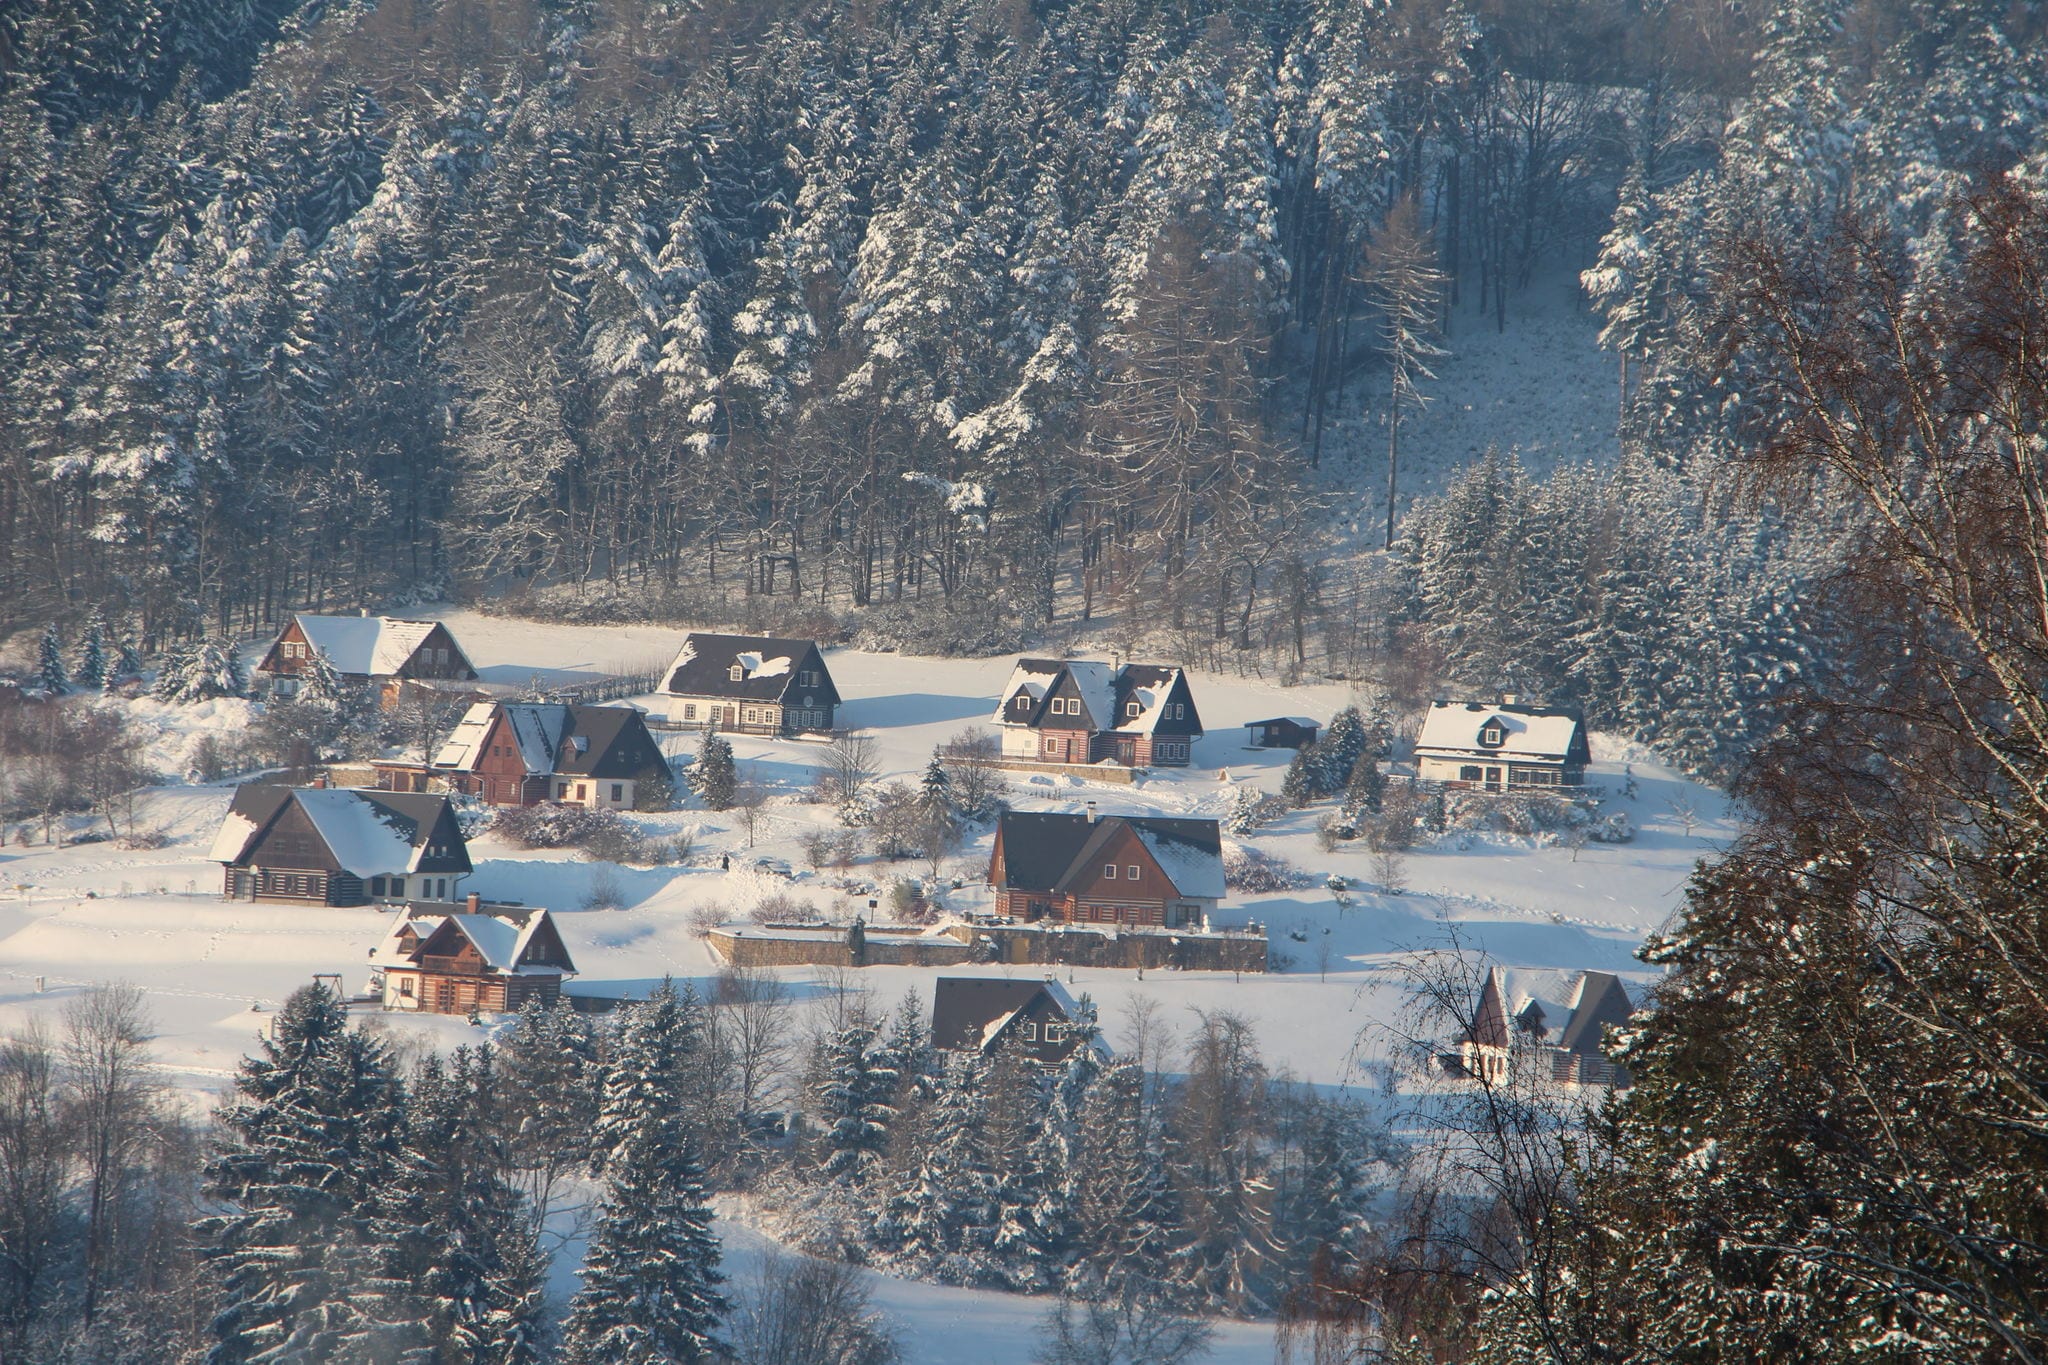 Chalet près du domaine de ski de Stupna, République Tchèque